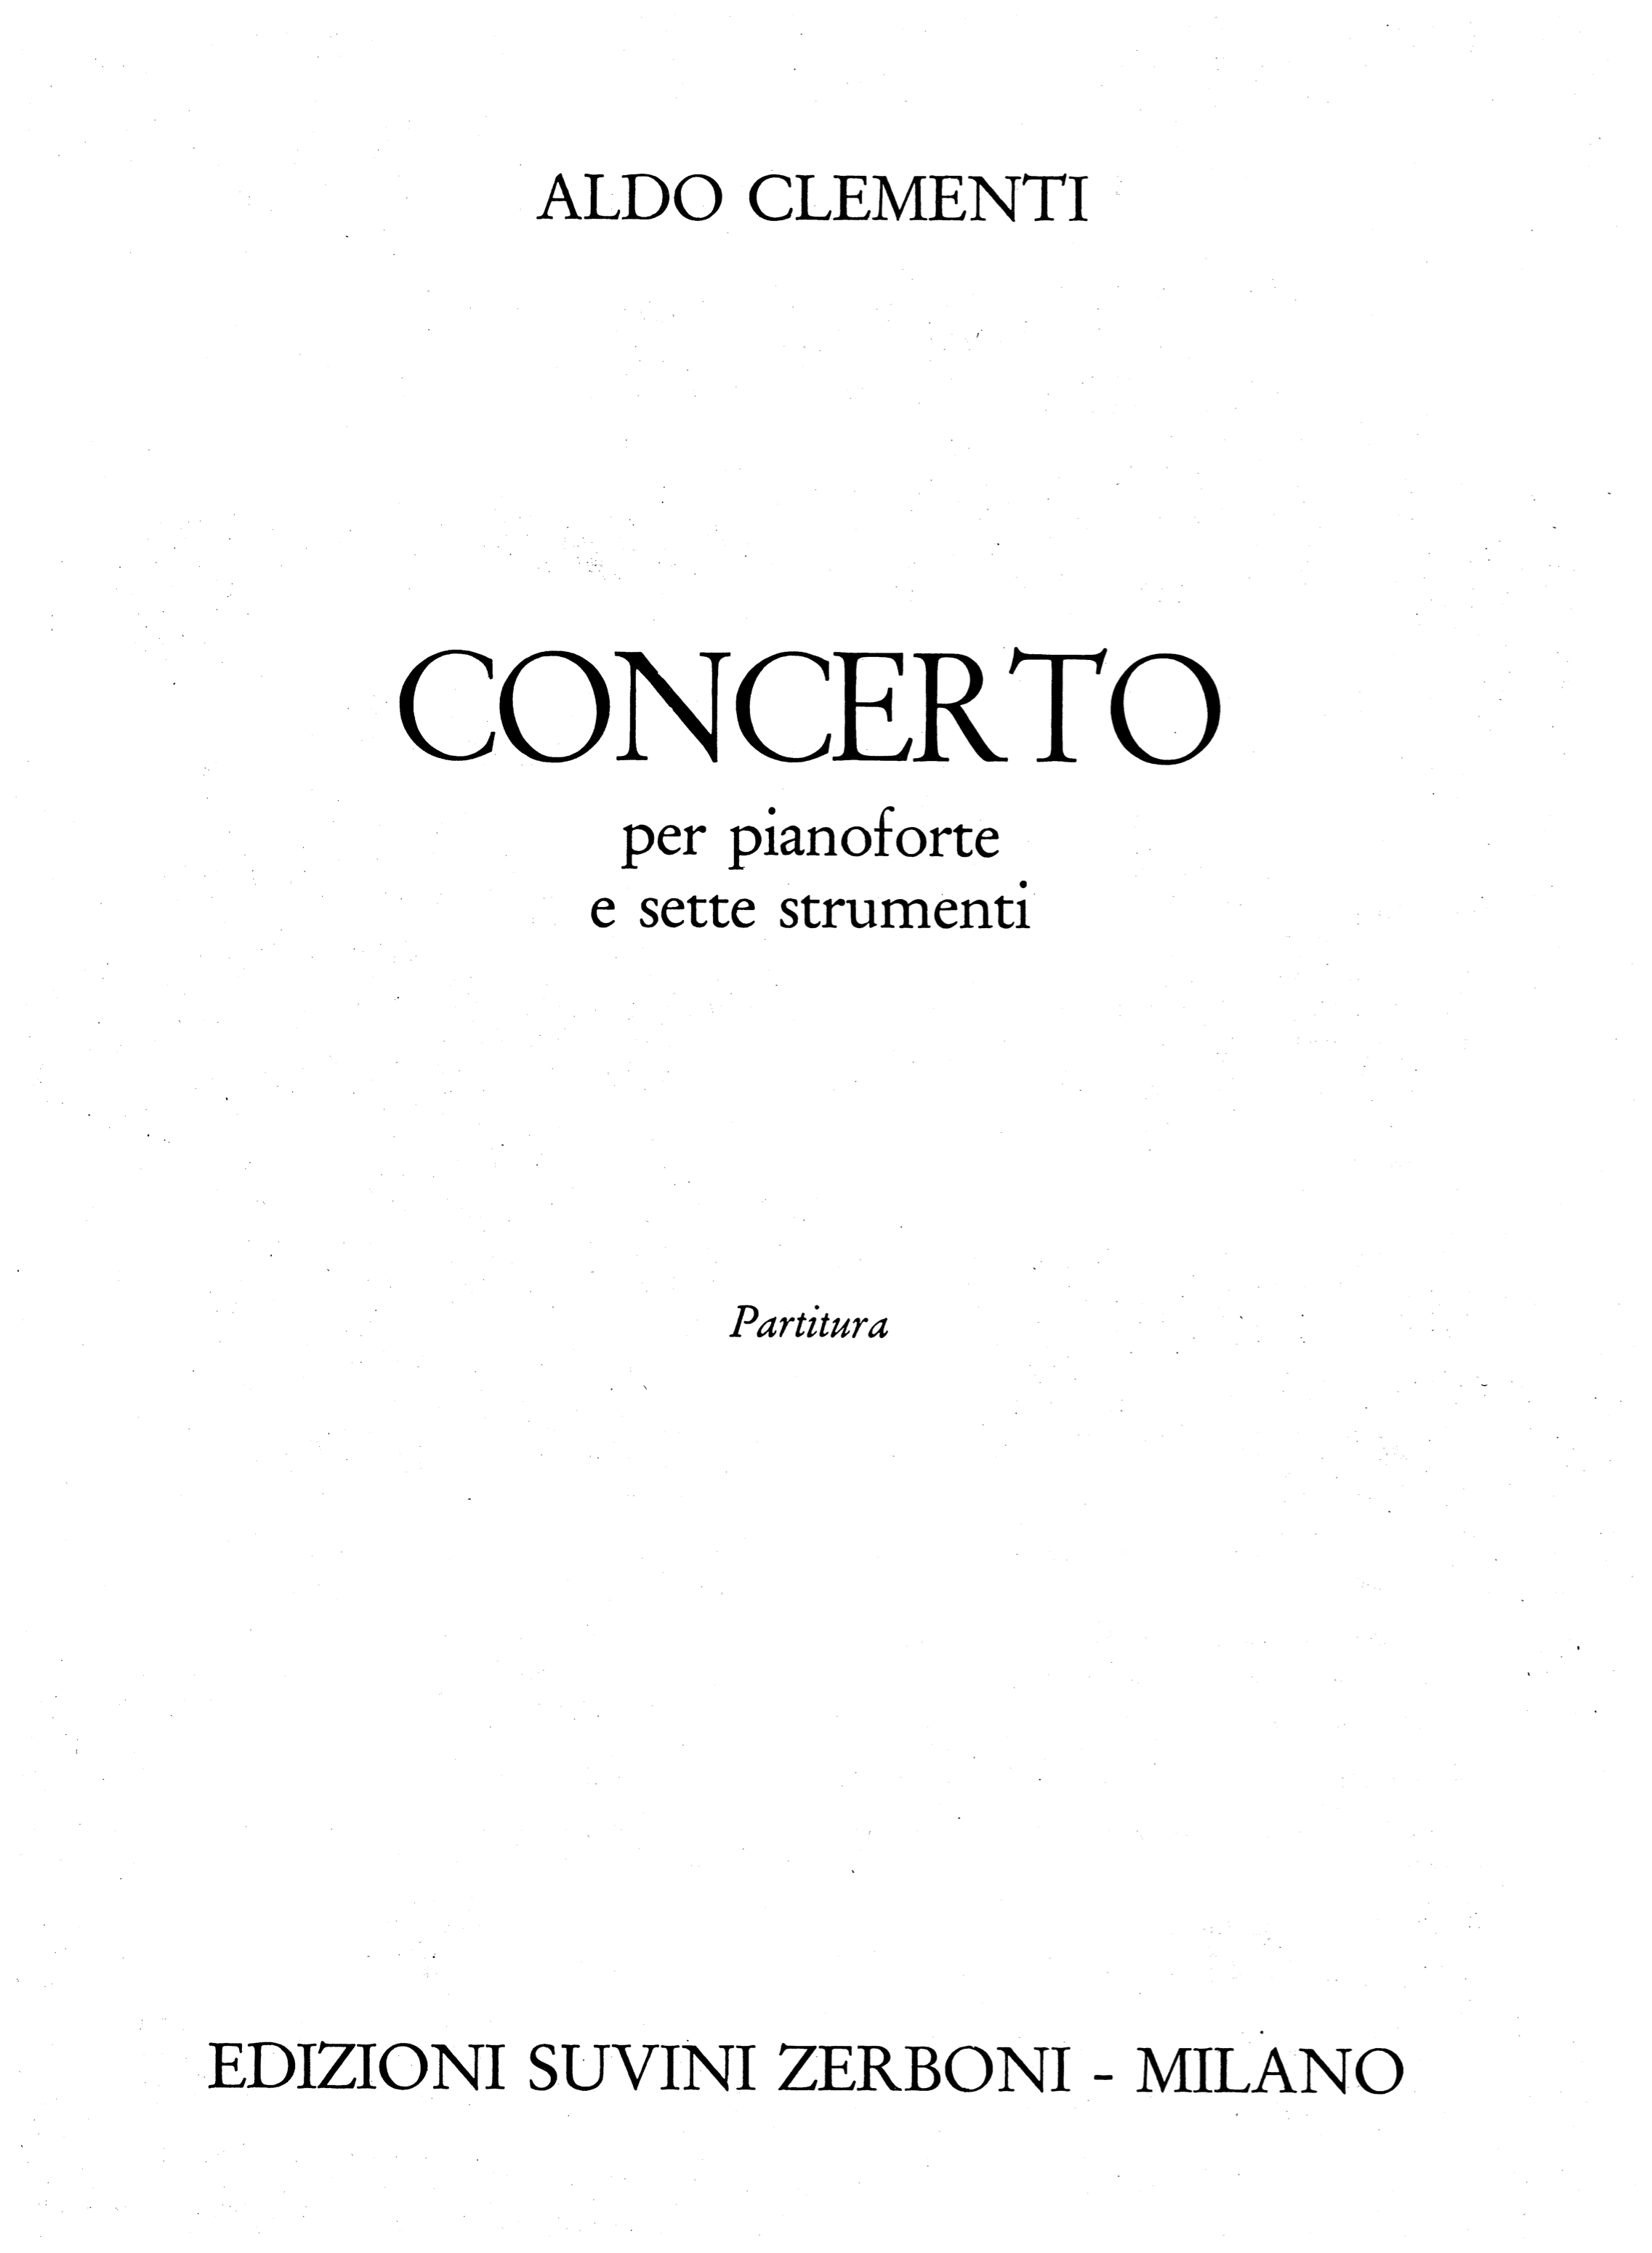 Concerto per pianoforte e sette strumenti_Clementi Aldo 1